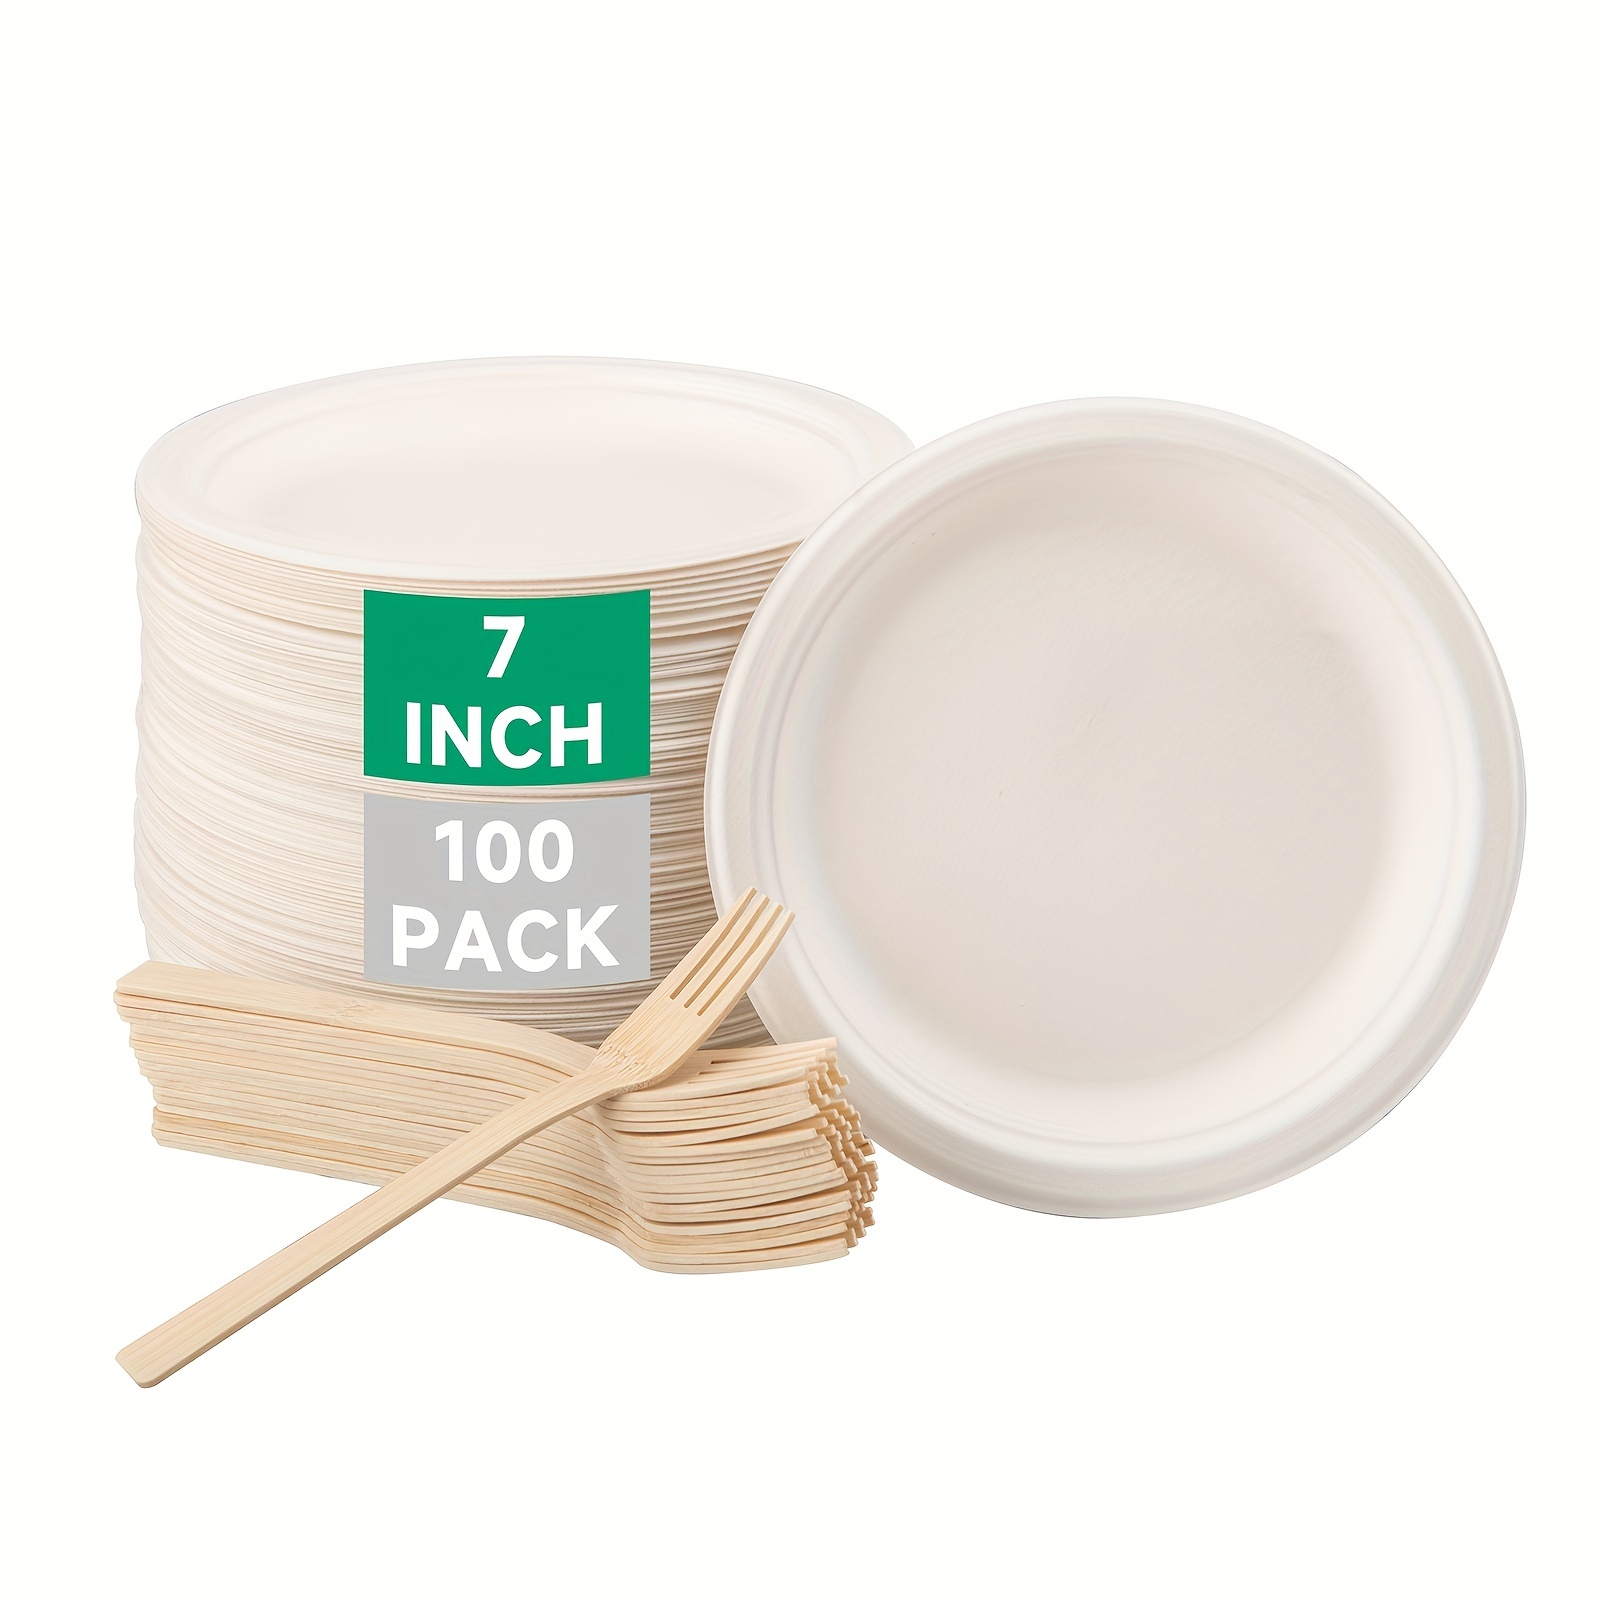 50pcs 3/5/6 Inch Disposable Plates Eco-friendly Degradable Paper